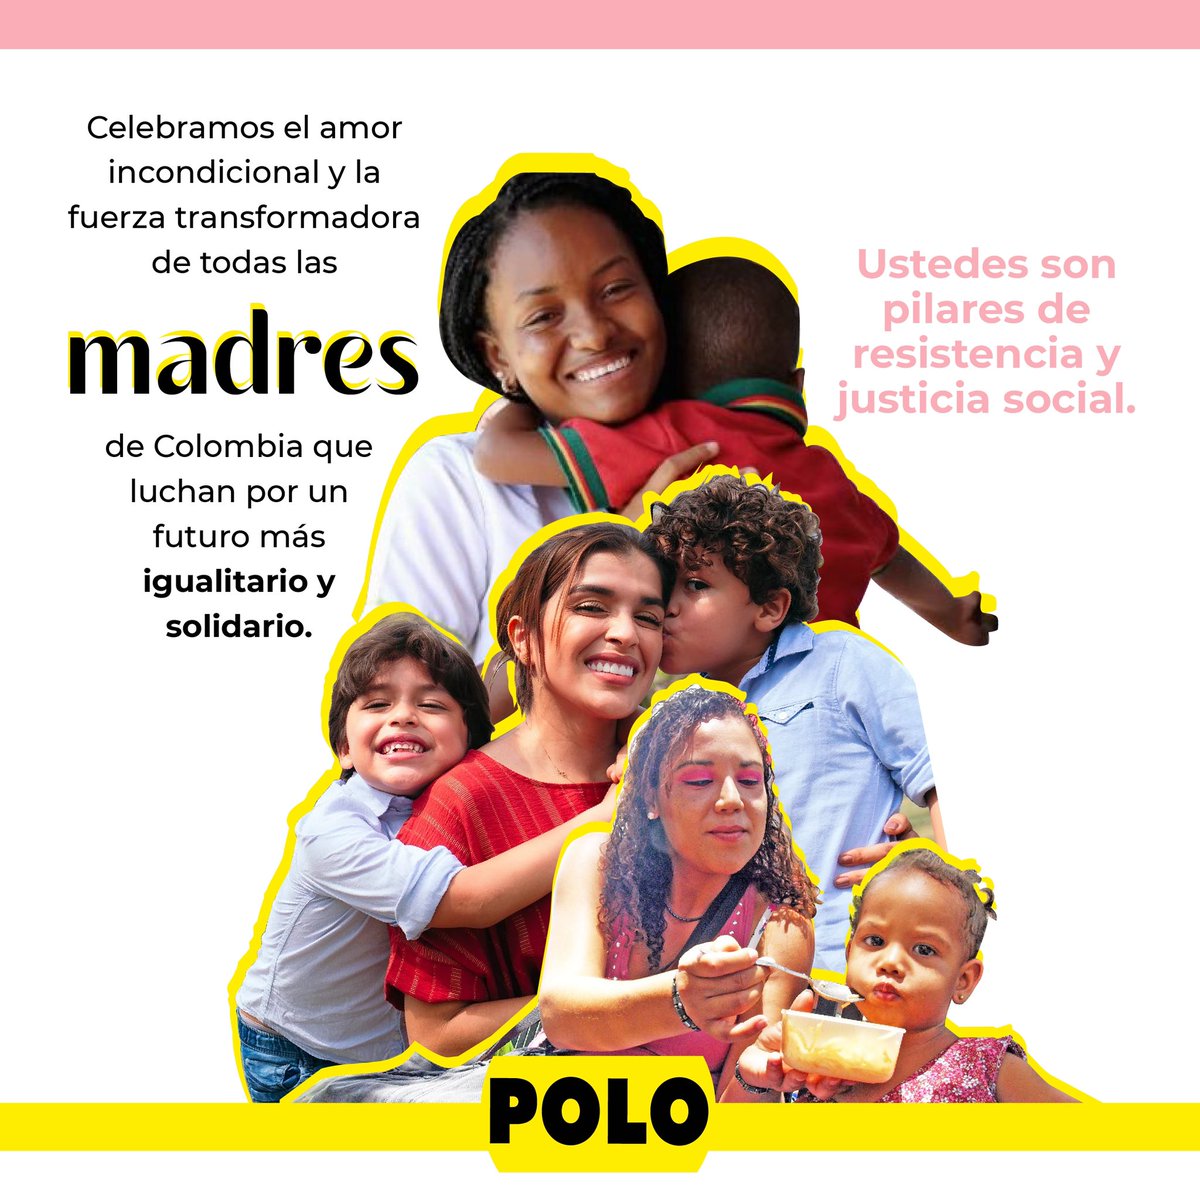 Hoy honramos el espíritu de lucha y resistencia de todas las madres que trabajan día a día por una Colombia digna y en paz. ¡Su fuerza nos inspira para seguir transformando a el país!✊💜 ¡Feliz Día de la Madre!